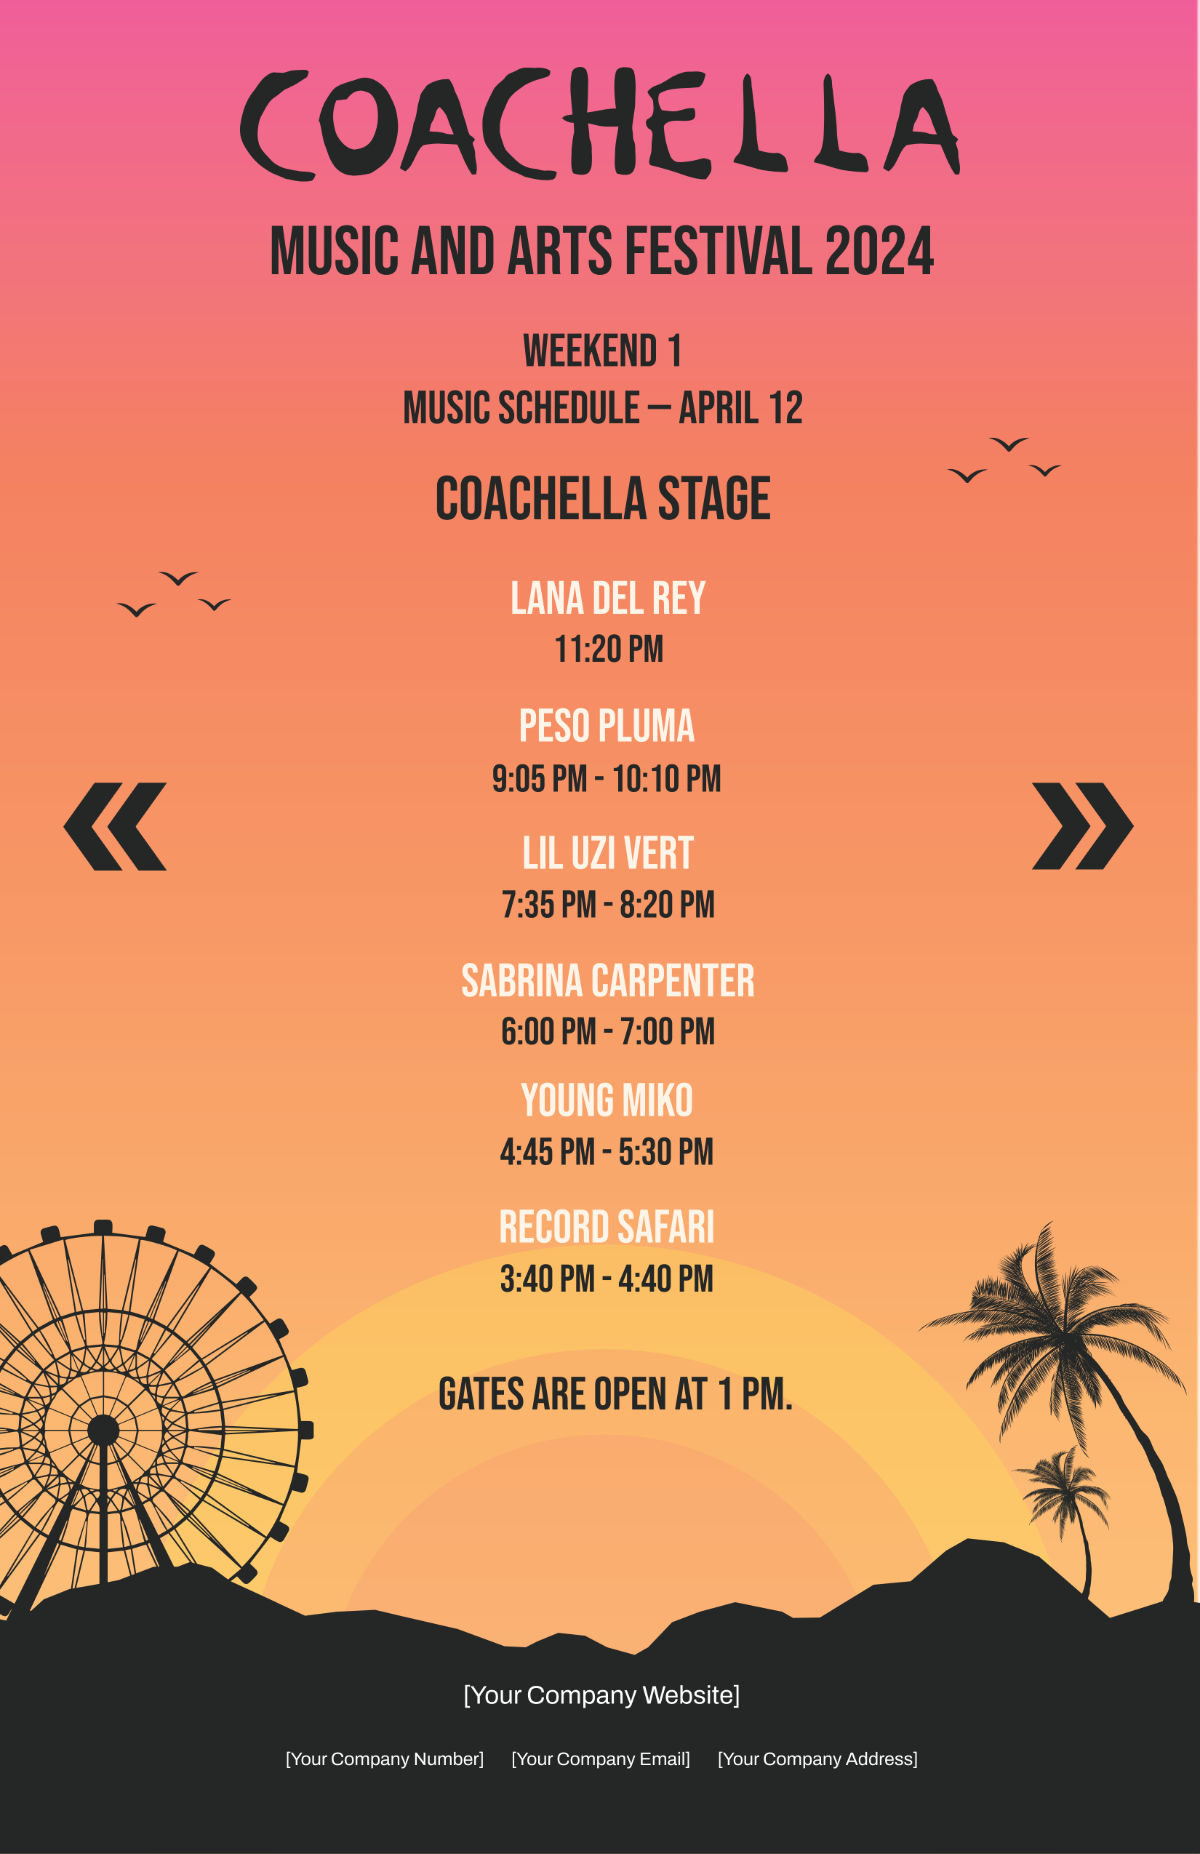 Coachella Music Schedule